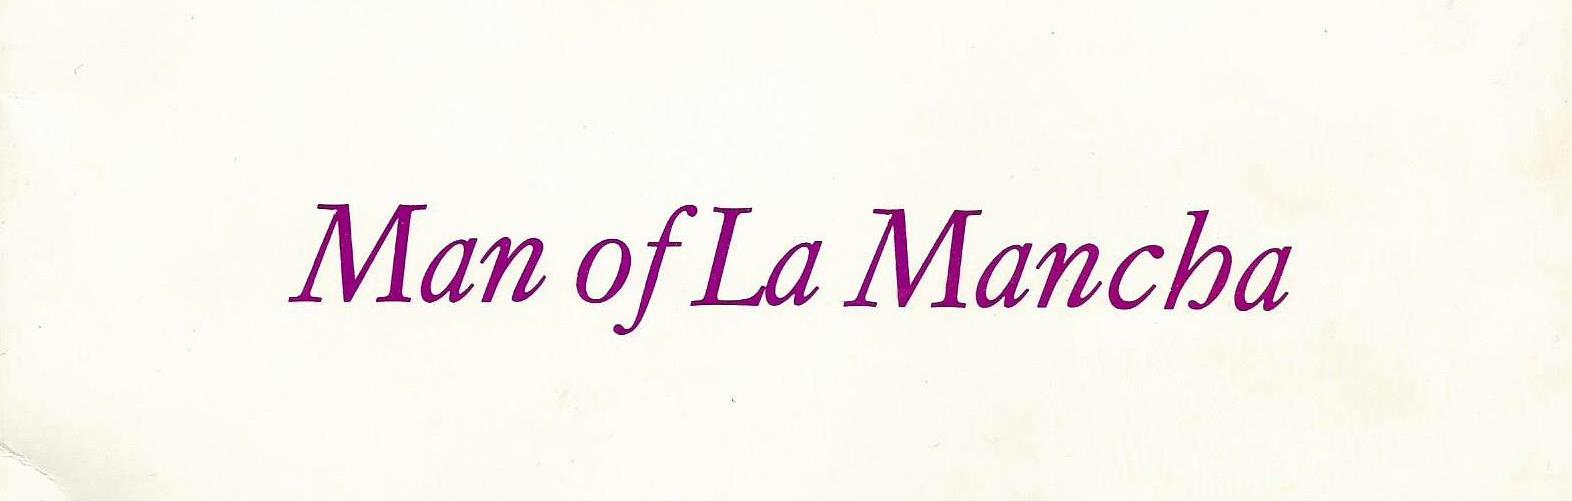 Man of La Mancha (1975)